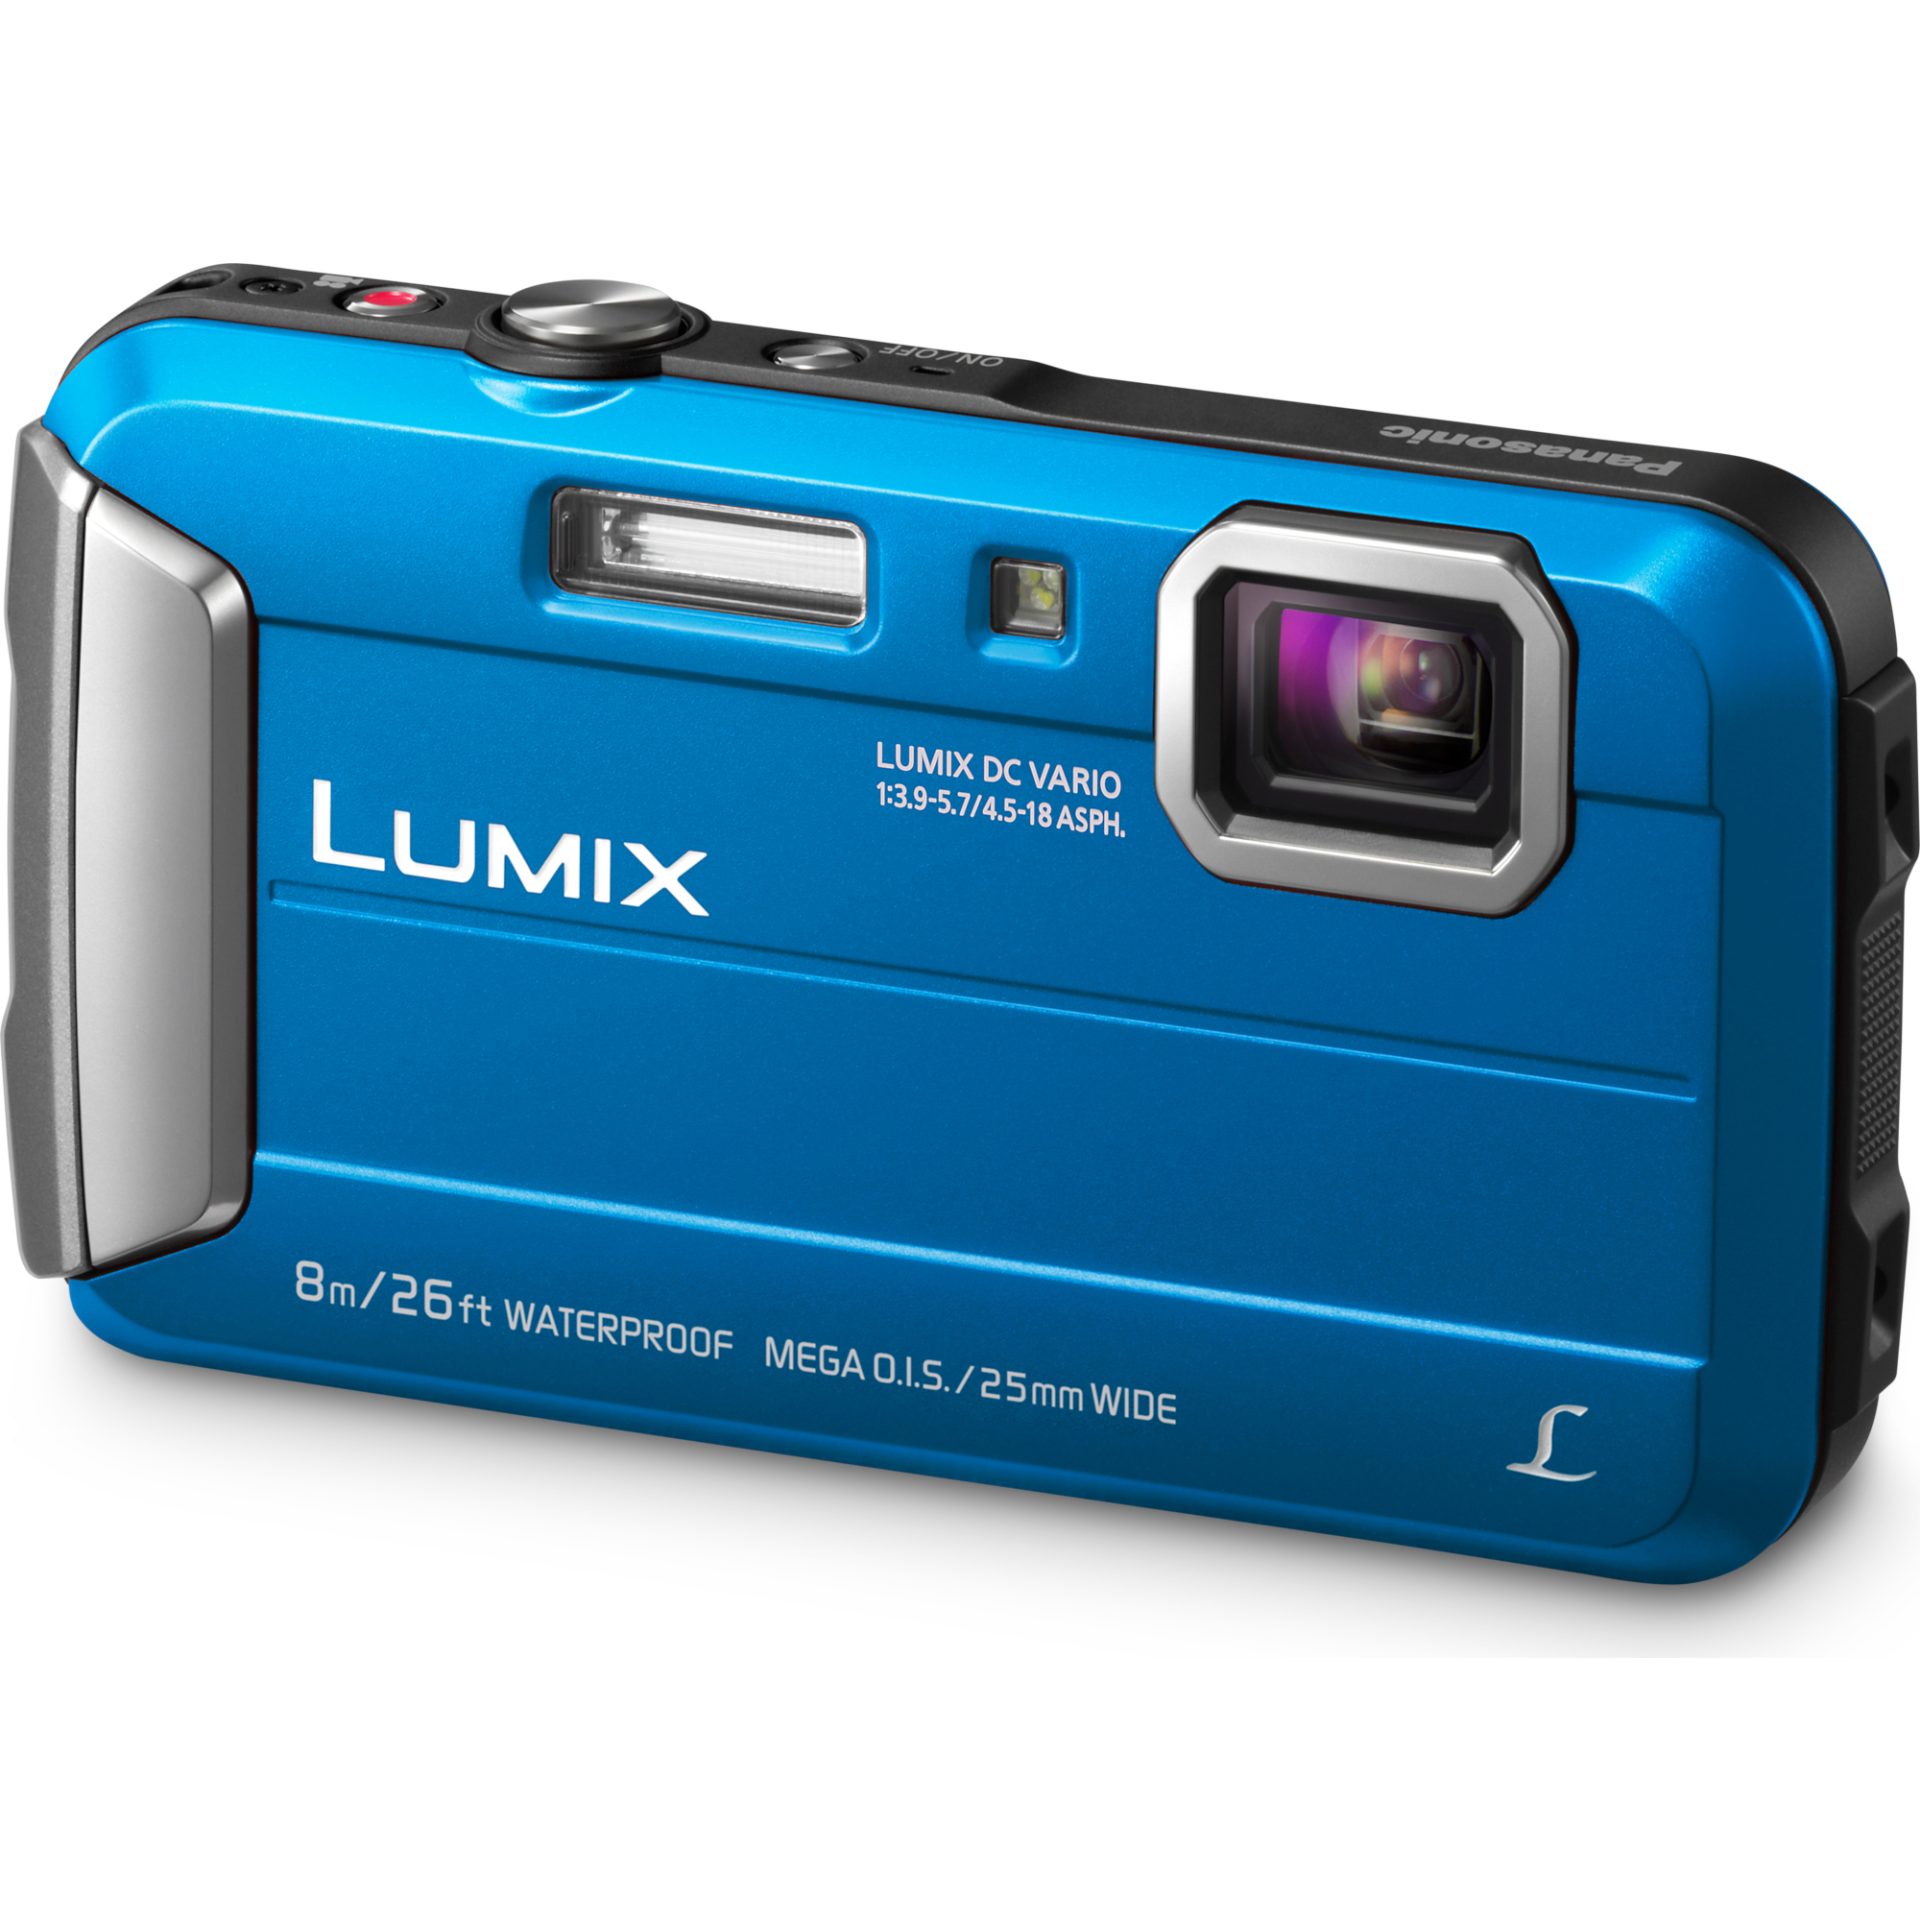 Panasonic DMC-FT30 Lumix kompaktní fotoaparát (vodotěsný až 8m, nárazuvzdorný a mrazuvzdorný, 220MB paměť, mega O.I.S., MP4 HD video), modrá